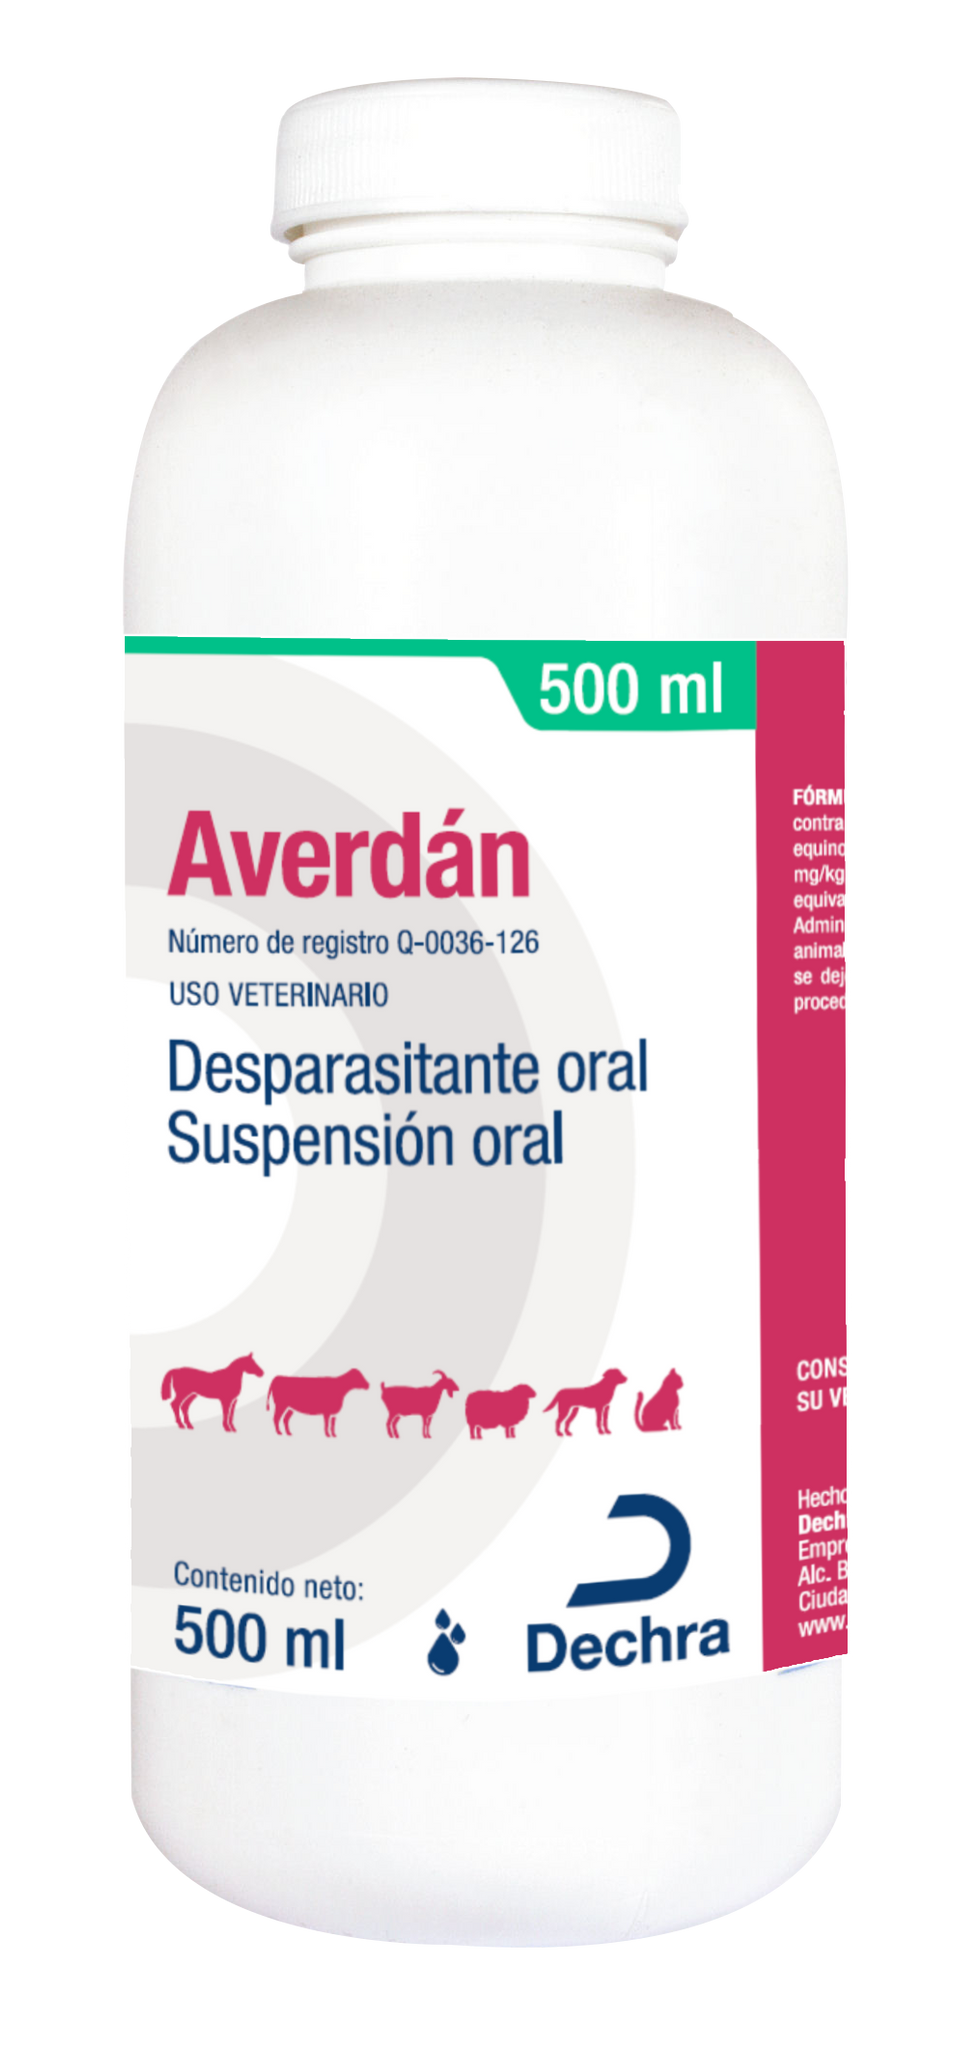 Averdan Desparasitante Oral 500ml (requiere receta medica veterinaria vigente)